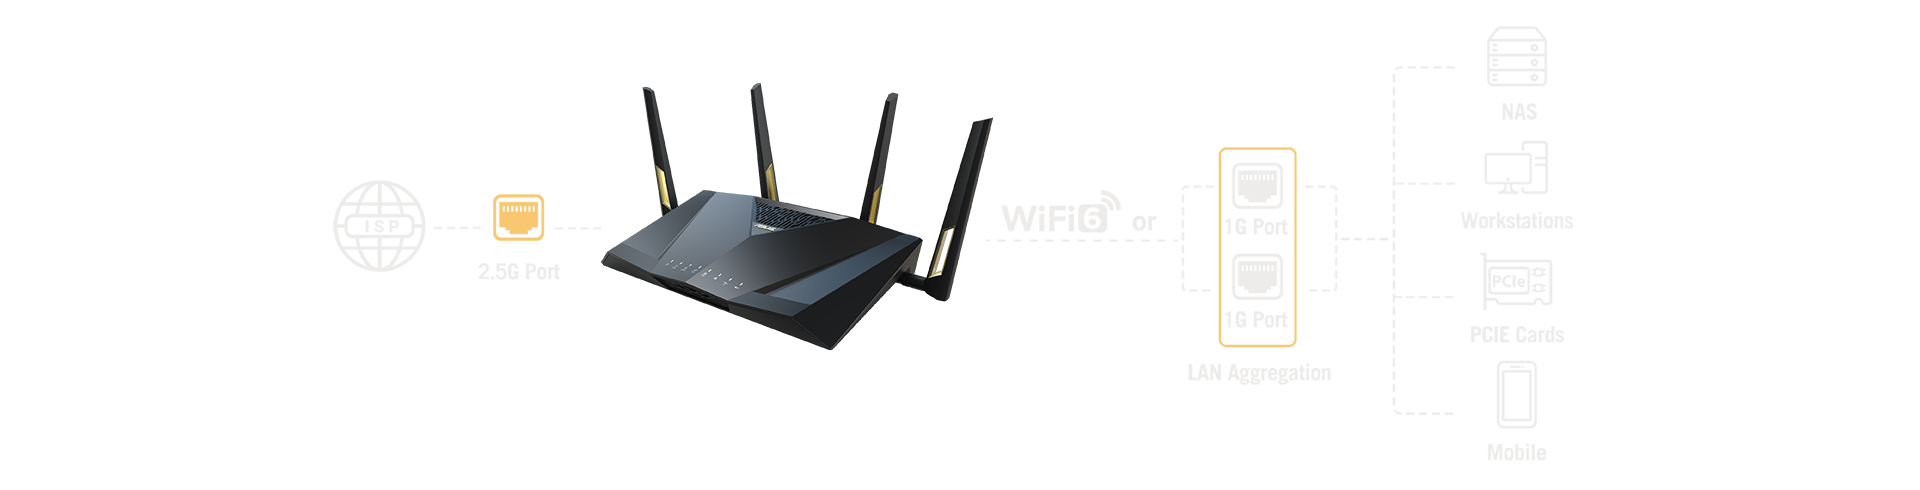 Pomocou agregácie LAN môžete skombinovať dva porty LAN s rýchlosťou 1 Gb/s a vytvoriť tak pripojenie LAN s rýchlosťou 2 Gb/s, čo je skvelé na zabezpečenie dodatočnej šírky pásma.